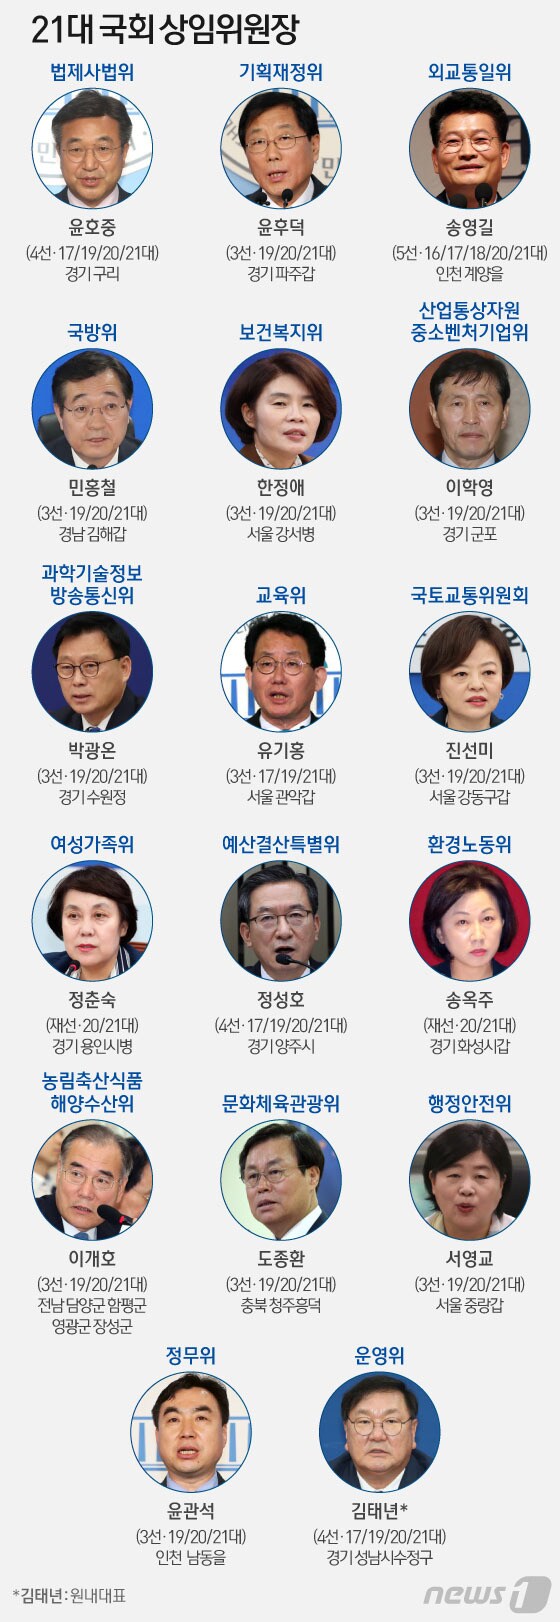 [그래픽] 21대 국회 전반기 상임위원장 선출